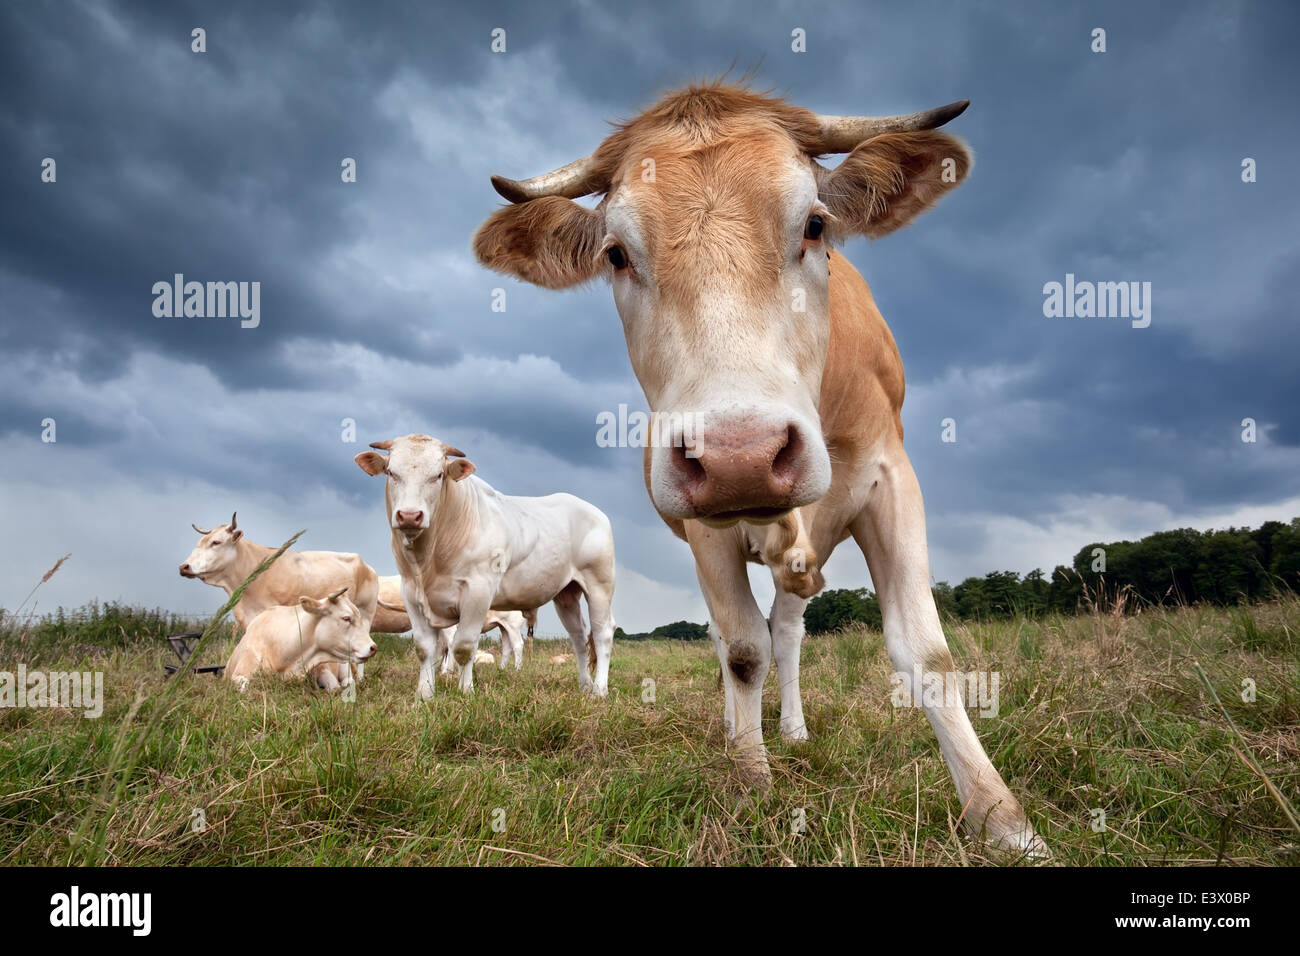 Carino mucca su pascolo vicino fino oltre il buio cielo velato Foto Stock